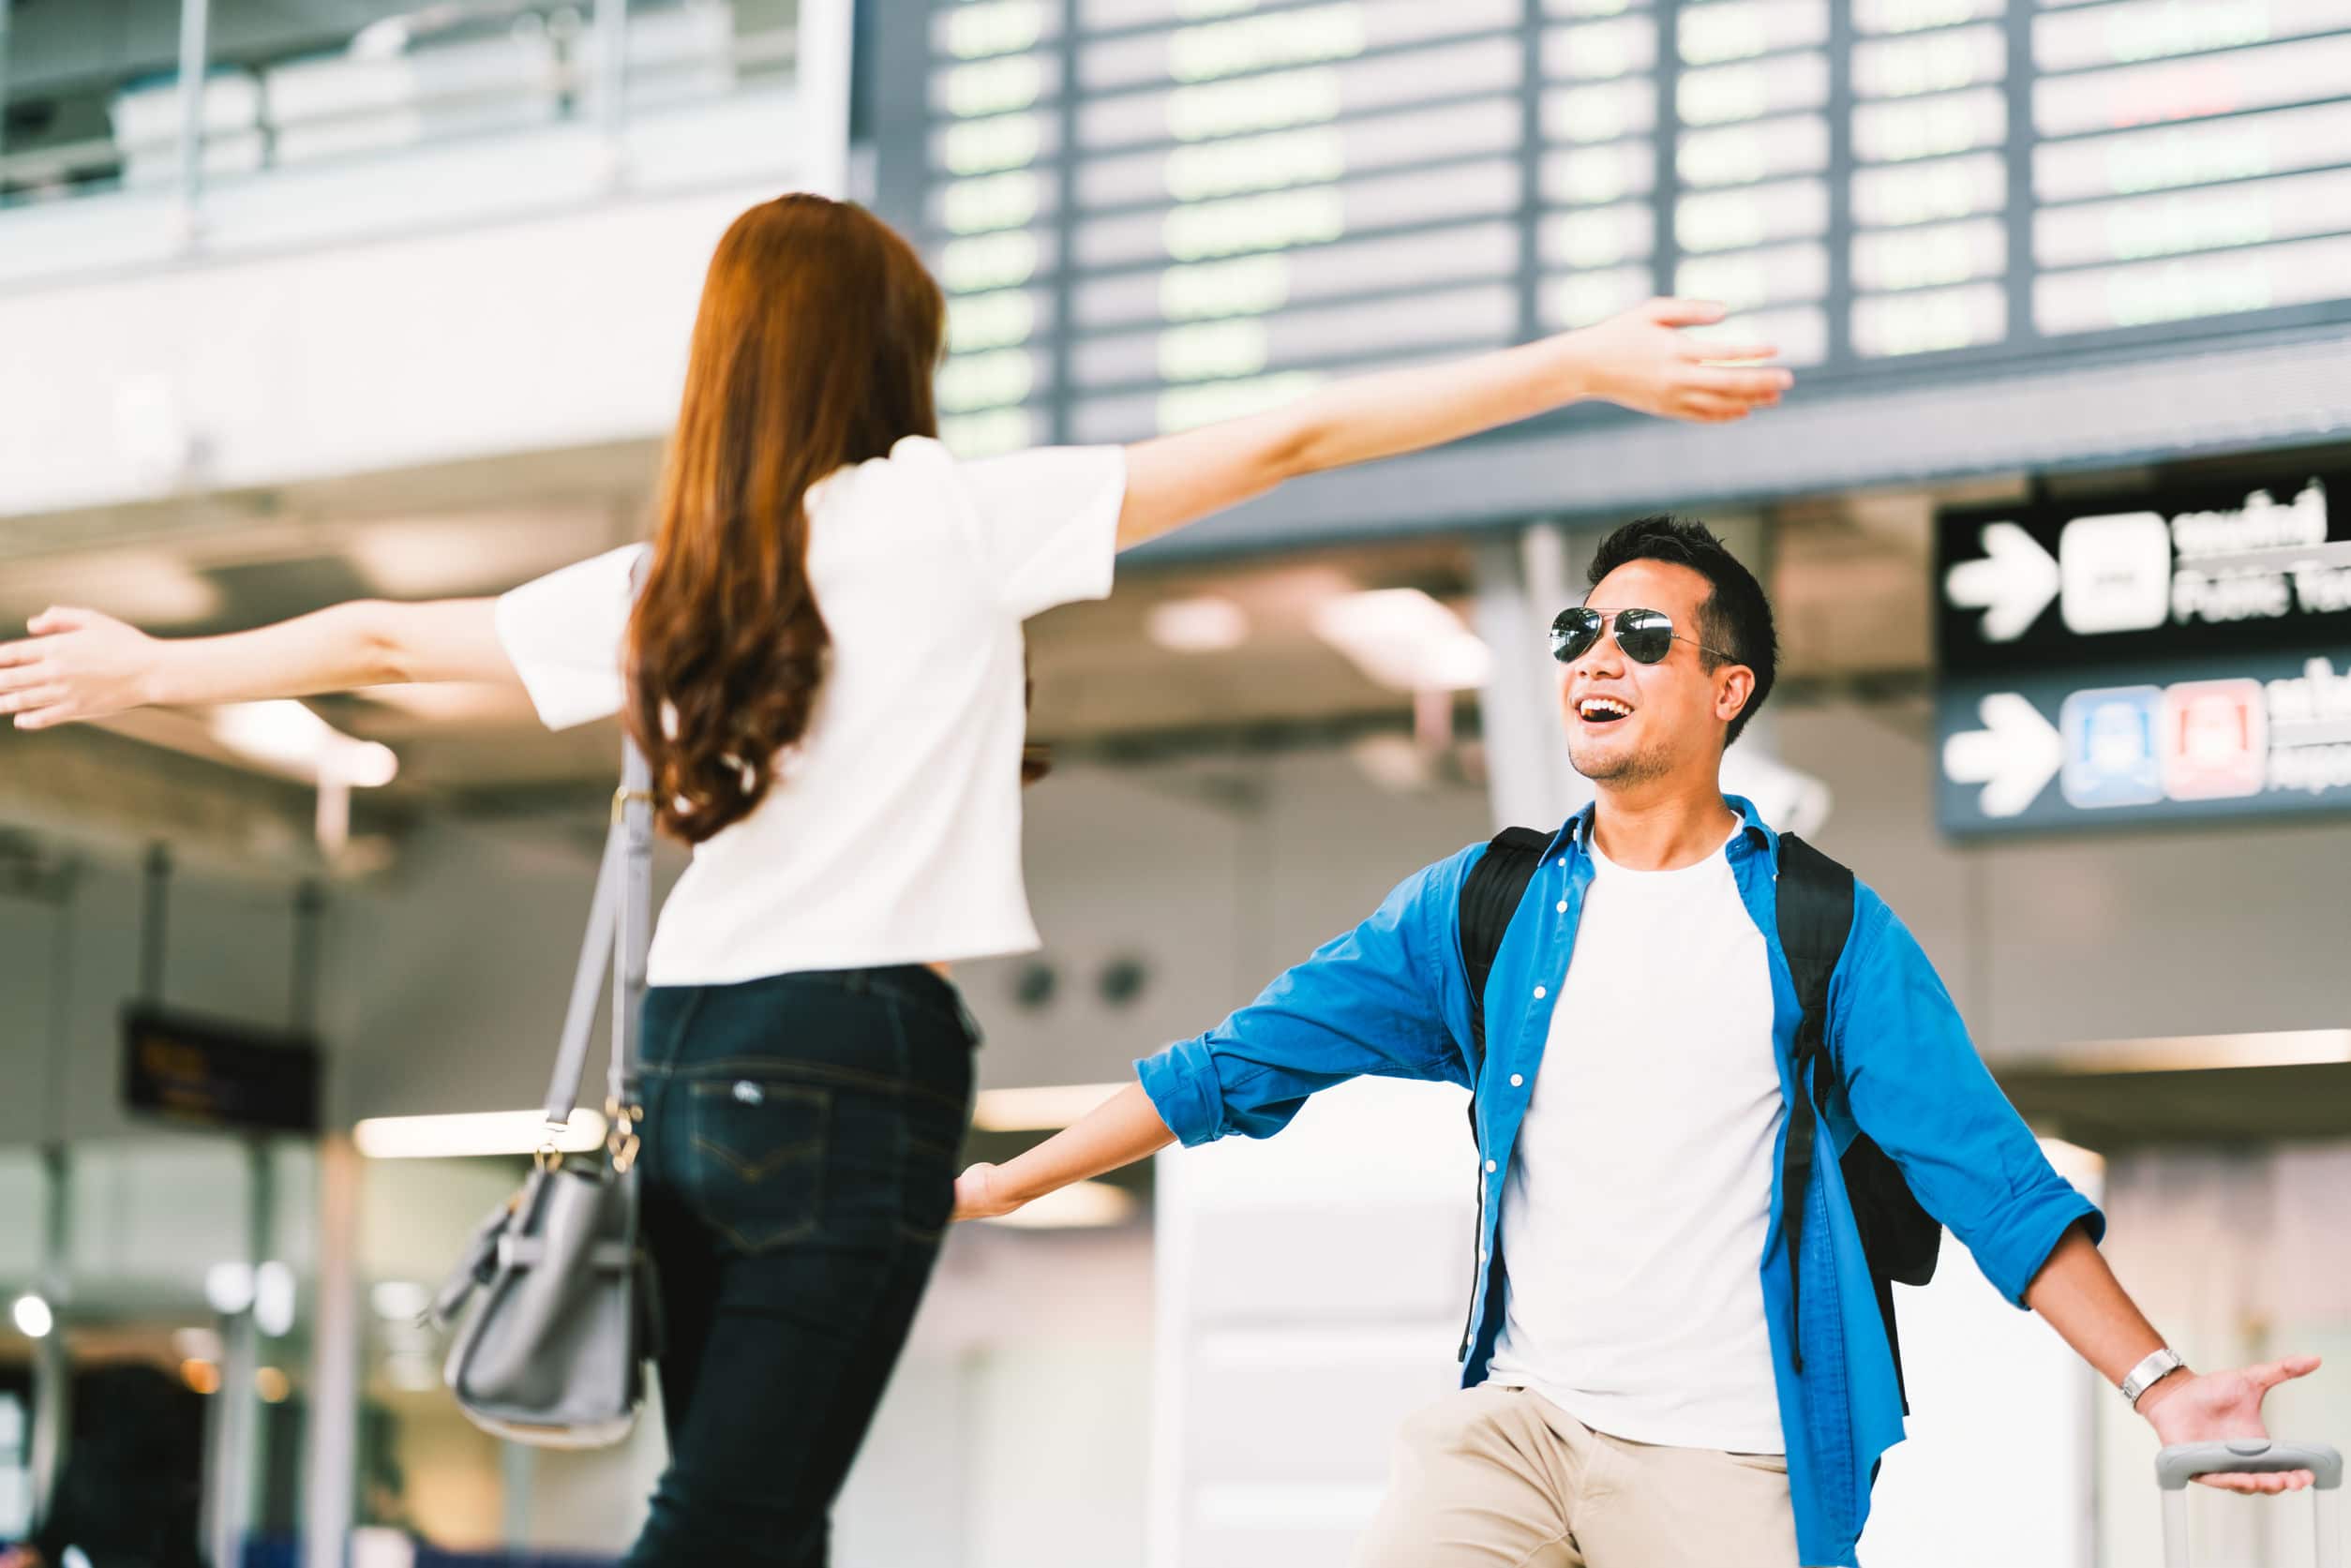 Homem e mulher, ambos asiáticos, felizes, correndo um em direção ao outro, se reencontrando em um aeroporto.